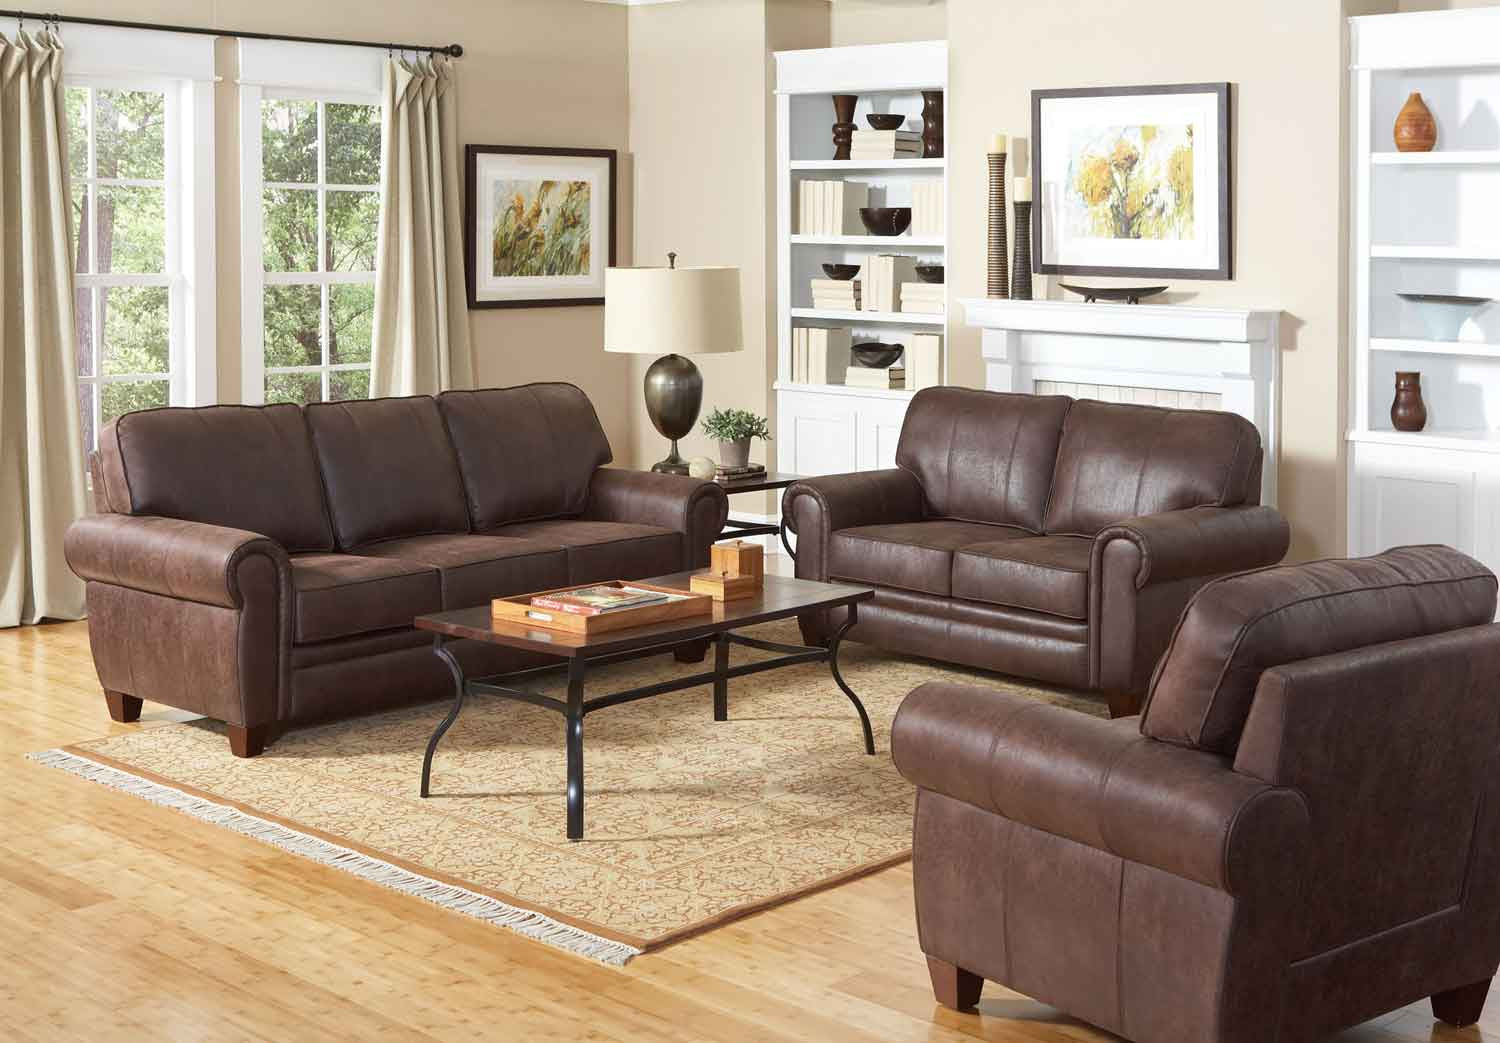 Living Room Tables Sets
 Coaster Bentley Living Room Set Brown LivSet at